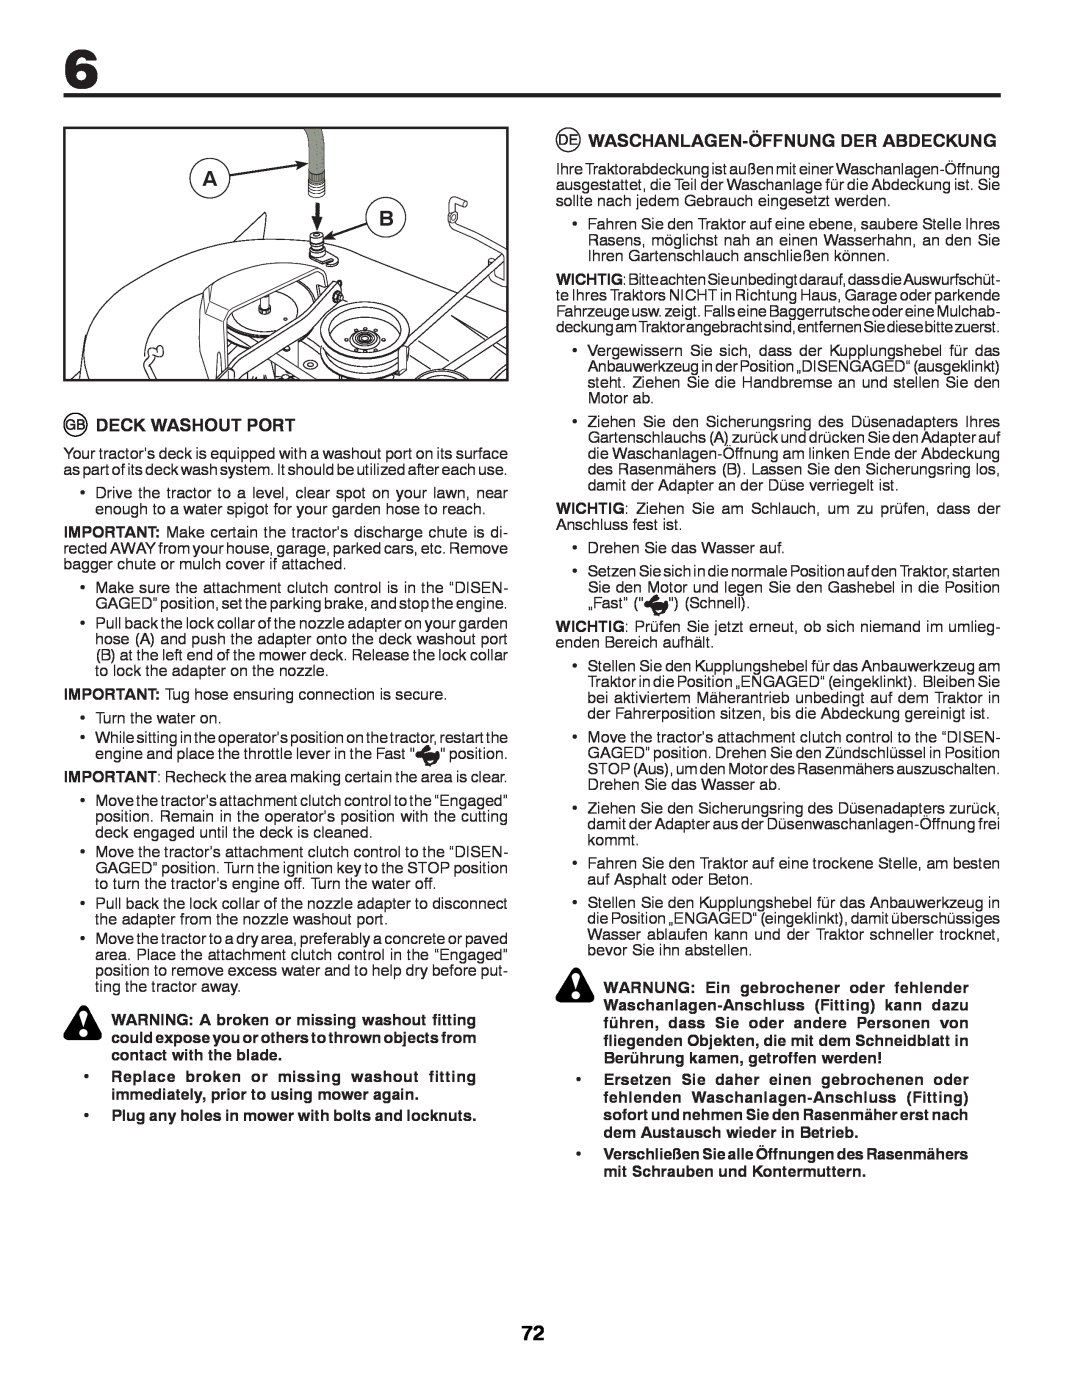 Partner Tech P145107H instruction manual Deck Washout Port, Waschanlagen-Öffnung Der Abdeckung 